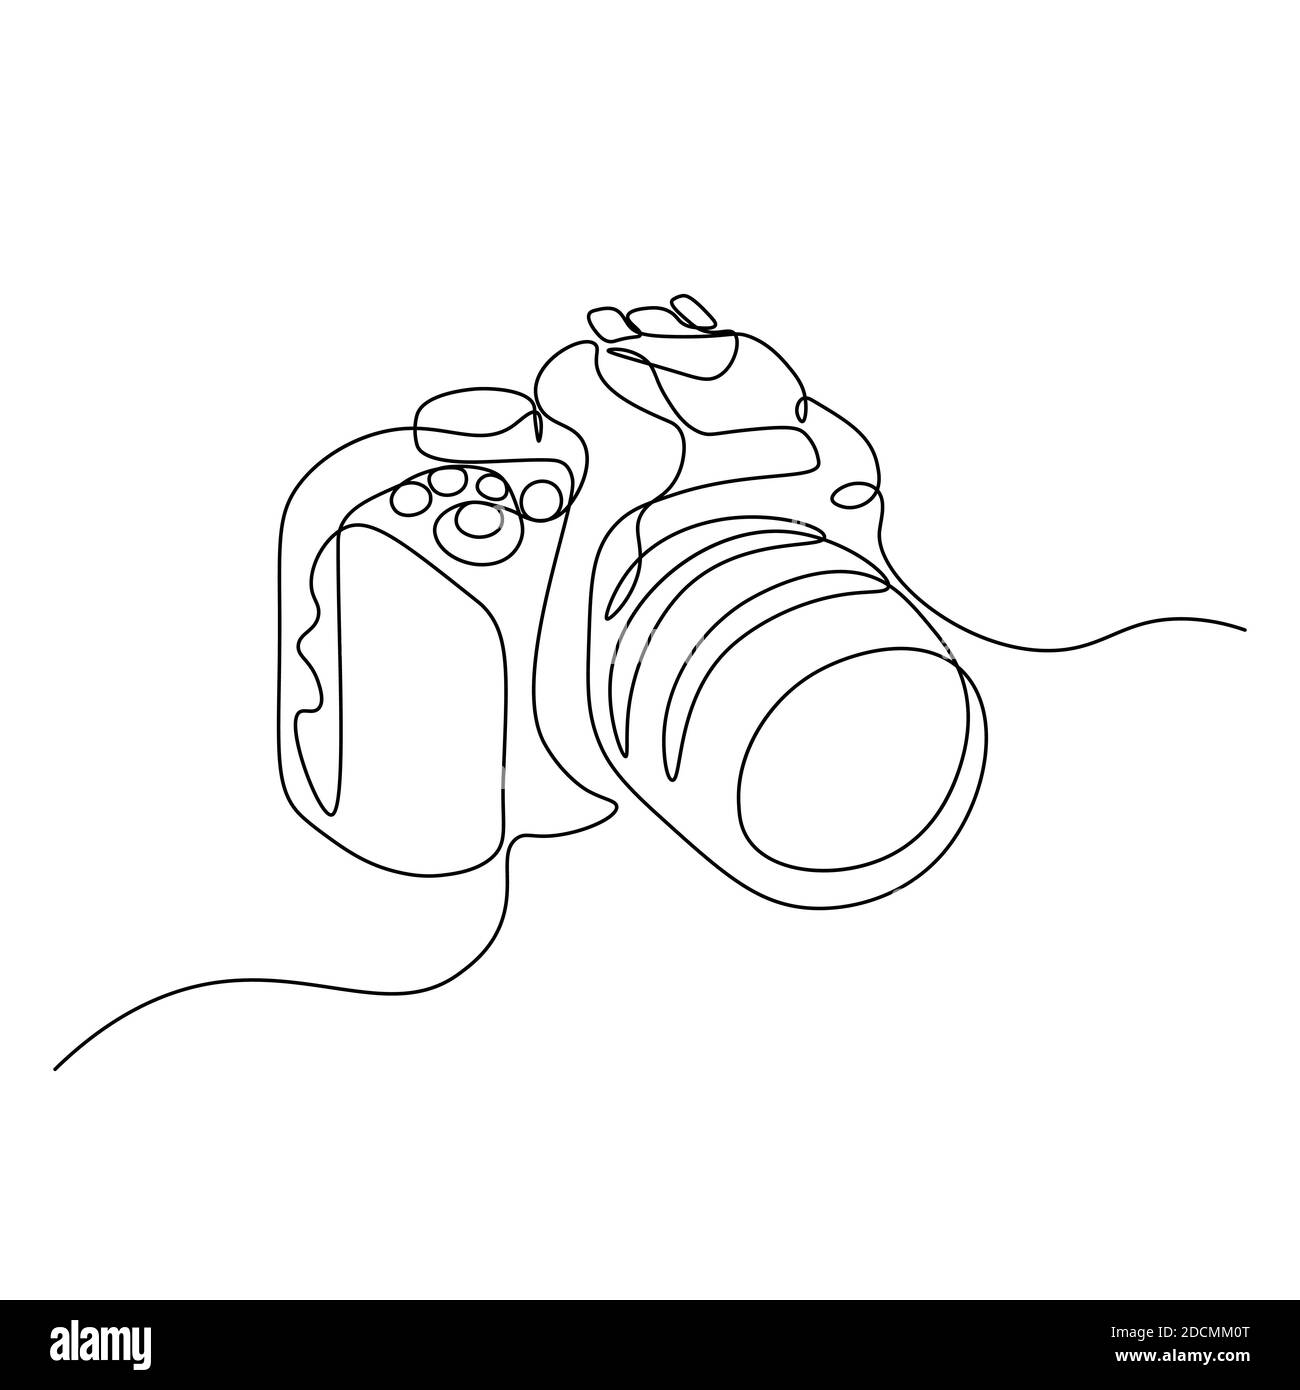 Línea de dibujo de la cámara de fotos.